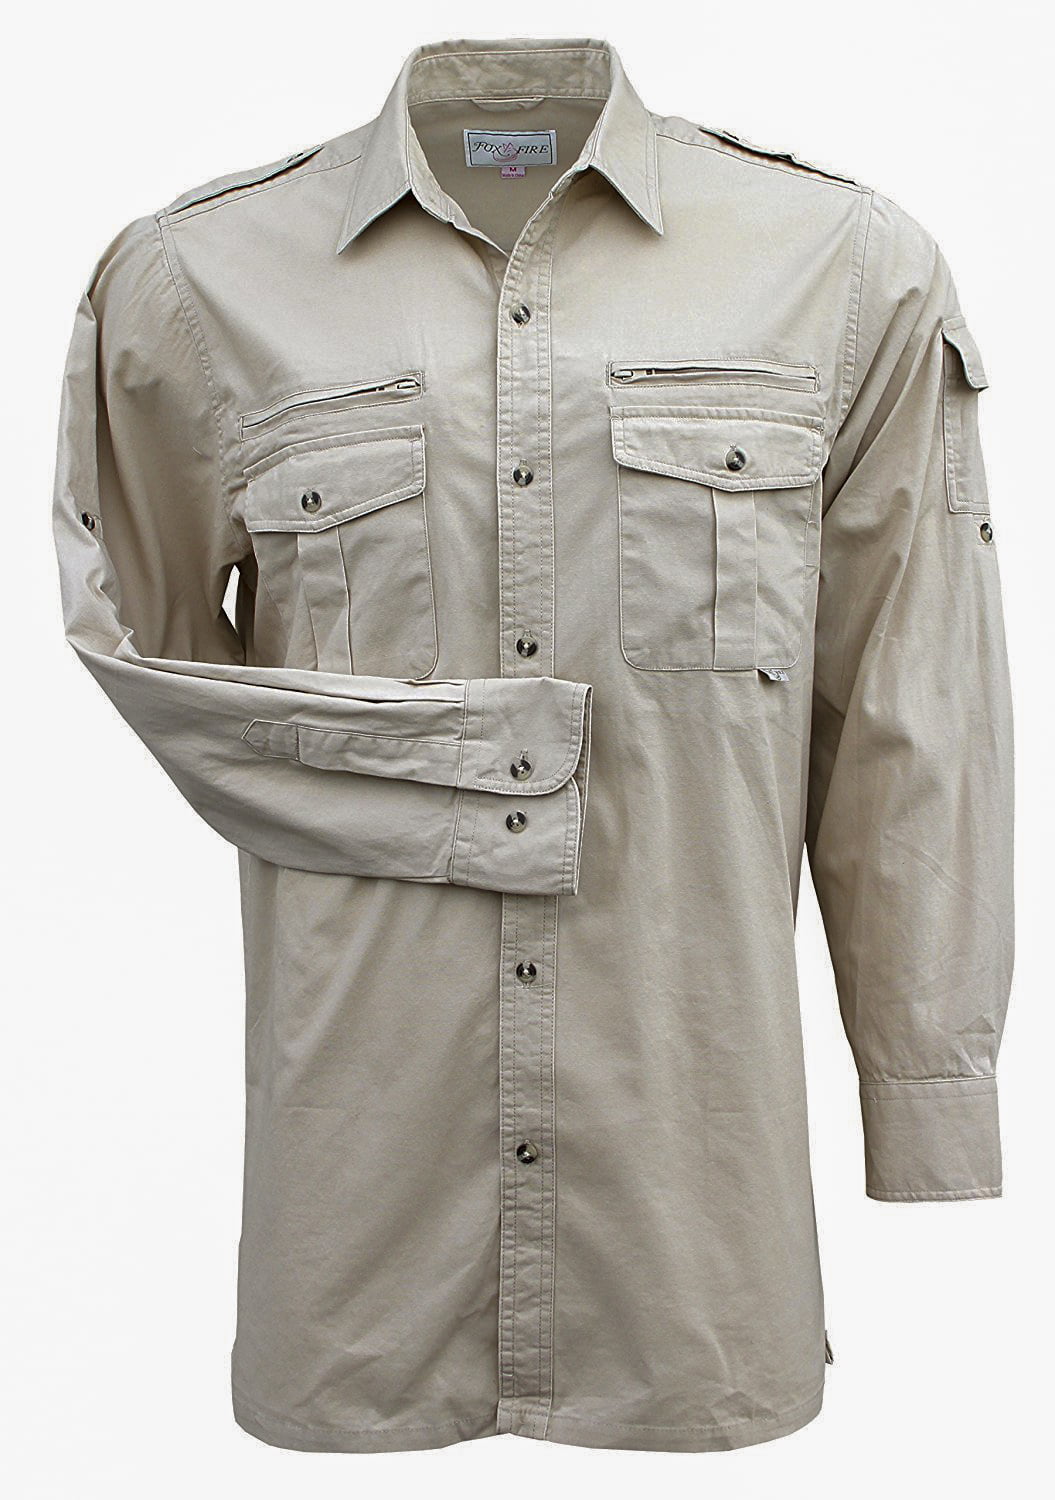 safari shirt long sleeve